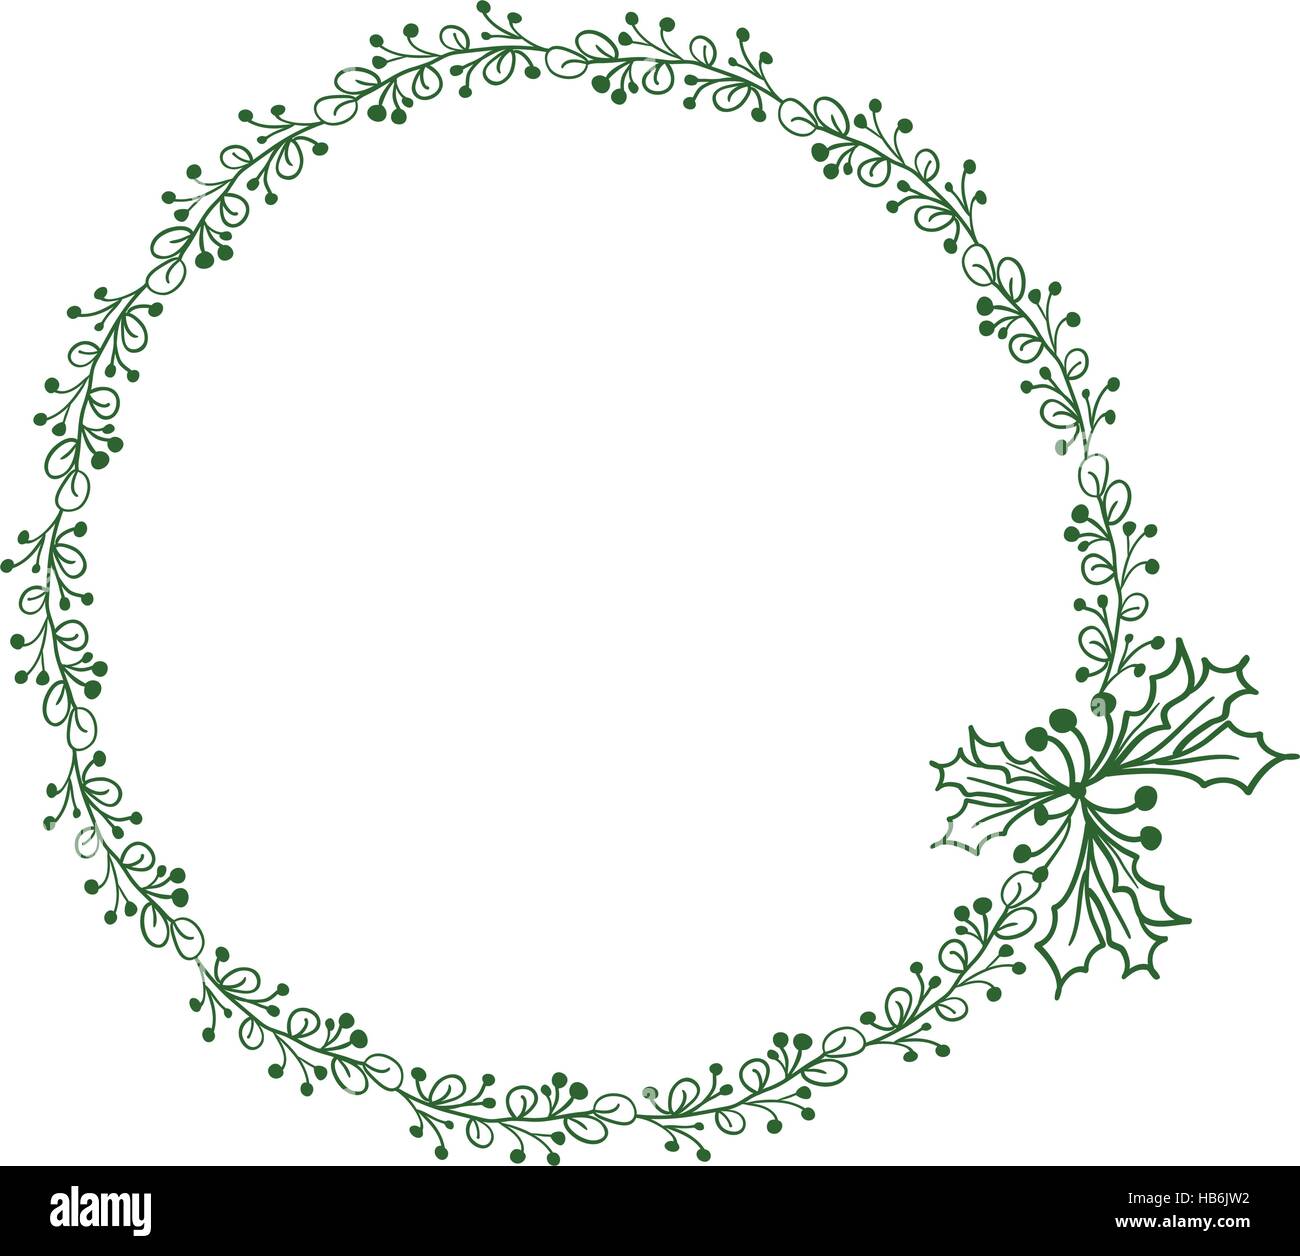 Verde cornice rotonda di foglie isolati su sfondo bianco. Illustrazione vettoriale EPS10 Illustrazione Vettoriale